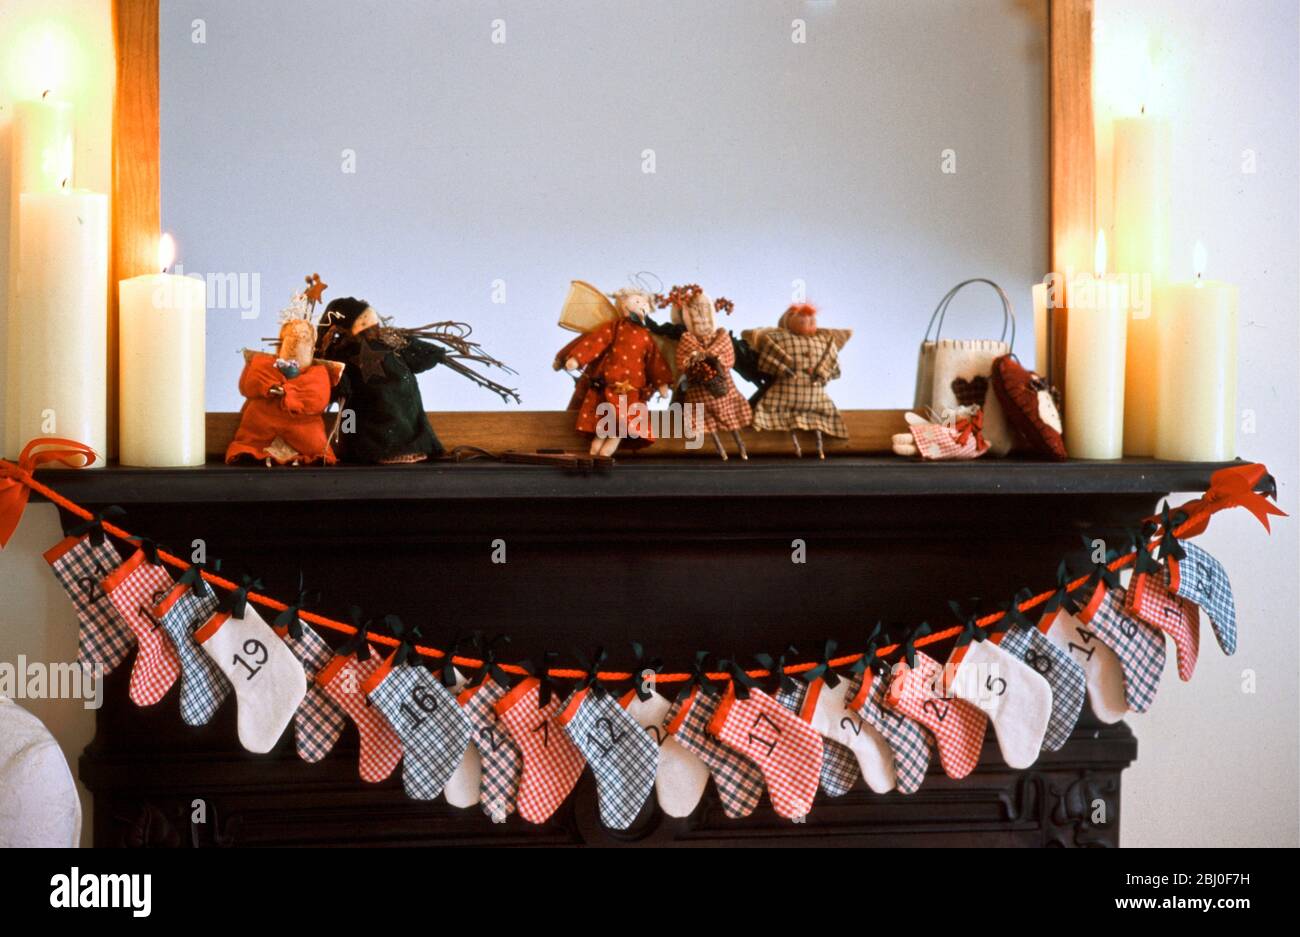 Chimneypiece für Weihnachten mit Adventskalender aus kleinen Weihnachtsstrümpfen mit Platz für kleine Geschenke für jeden Adventstag - Stockfoto